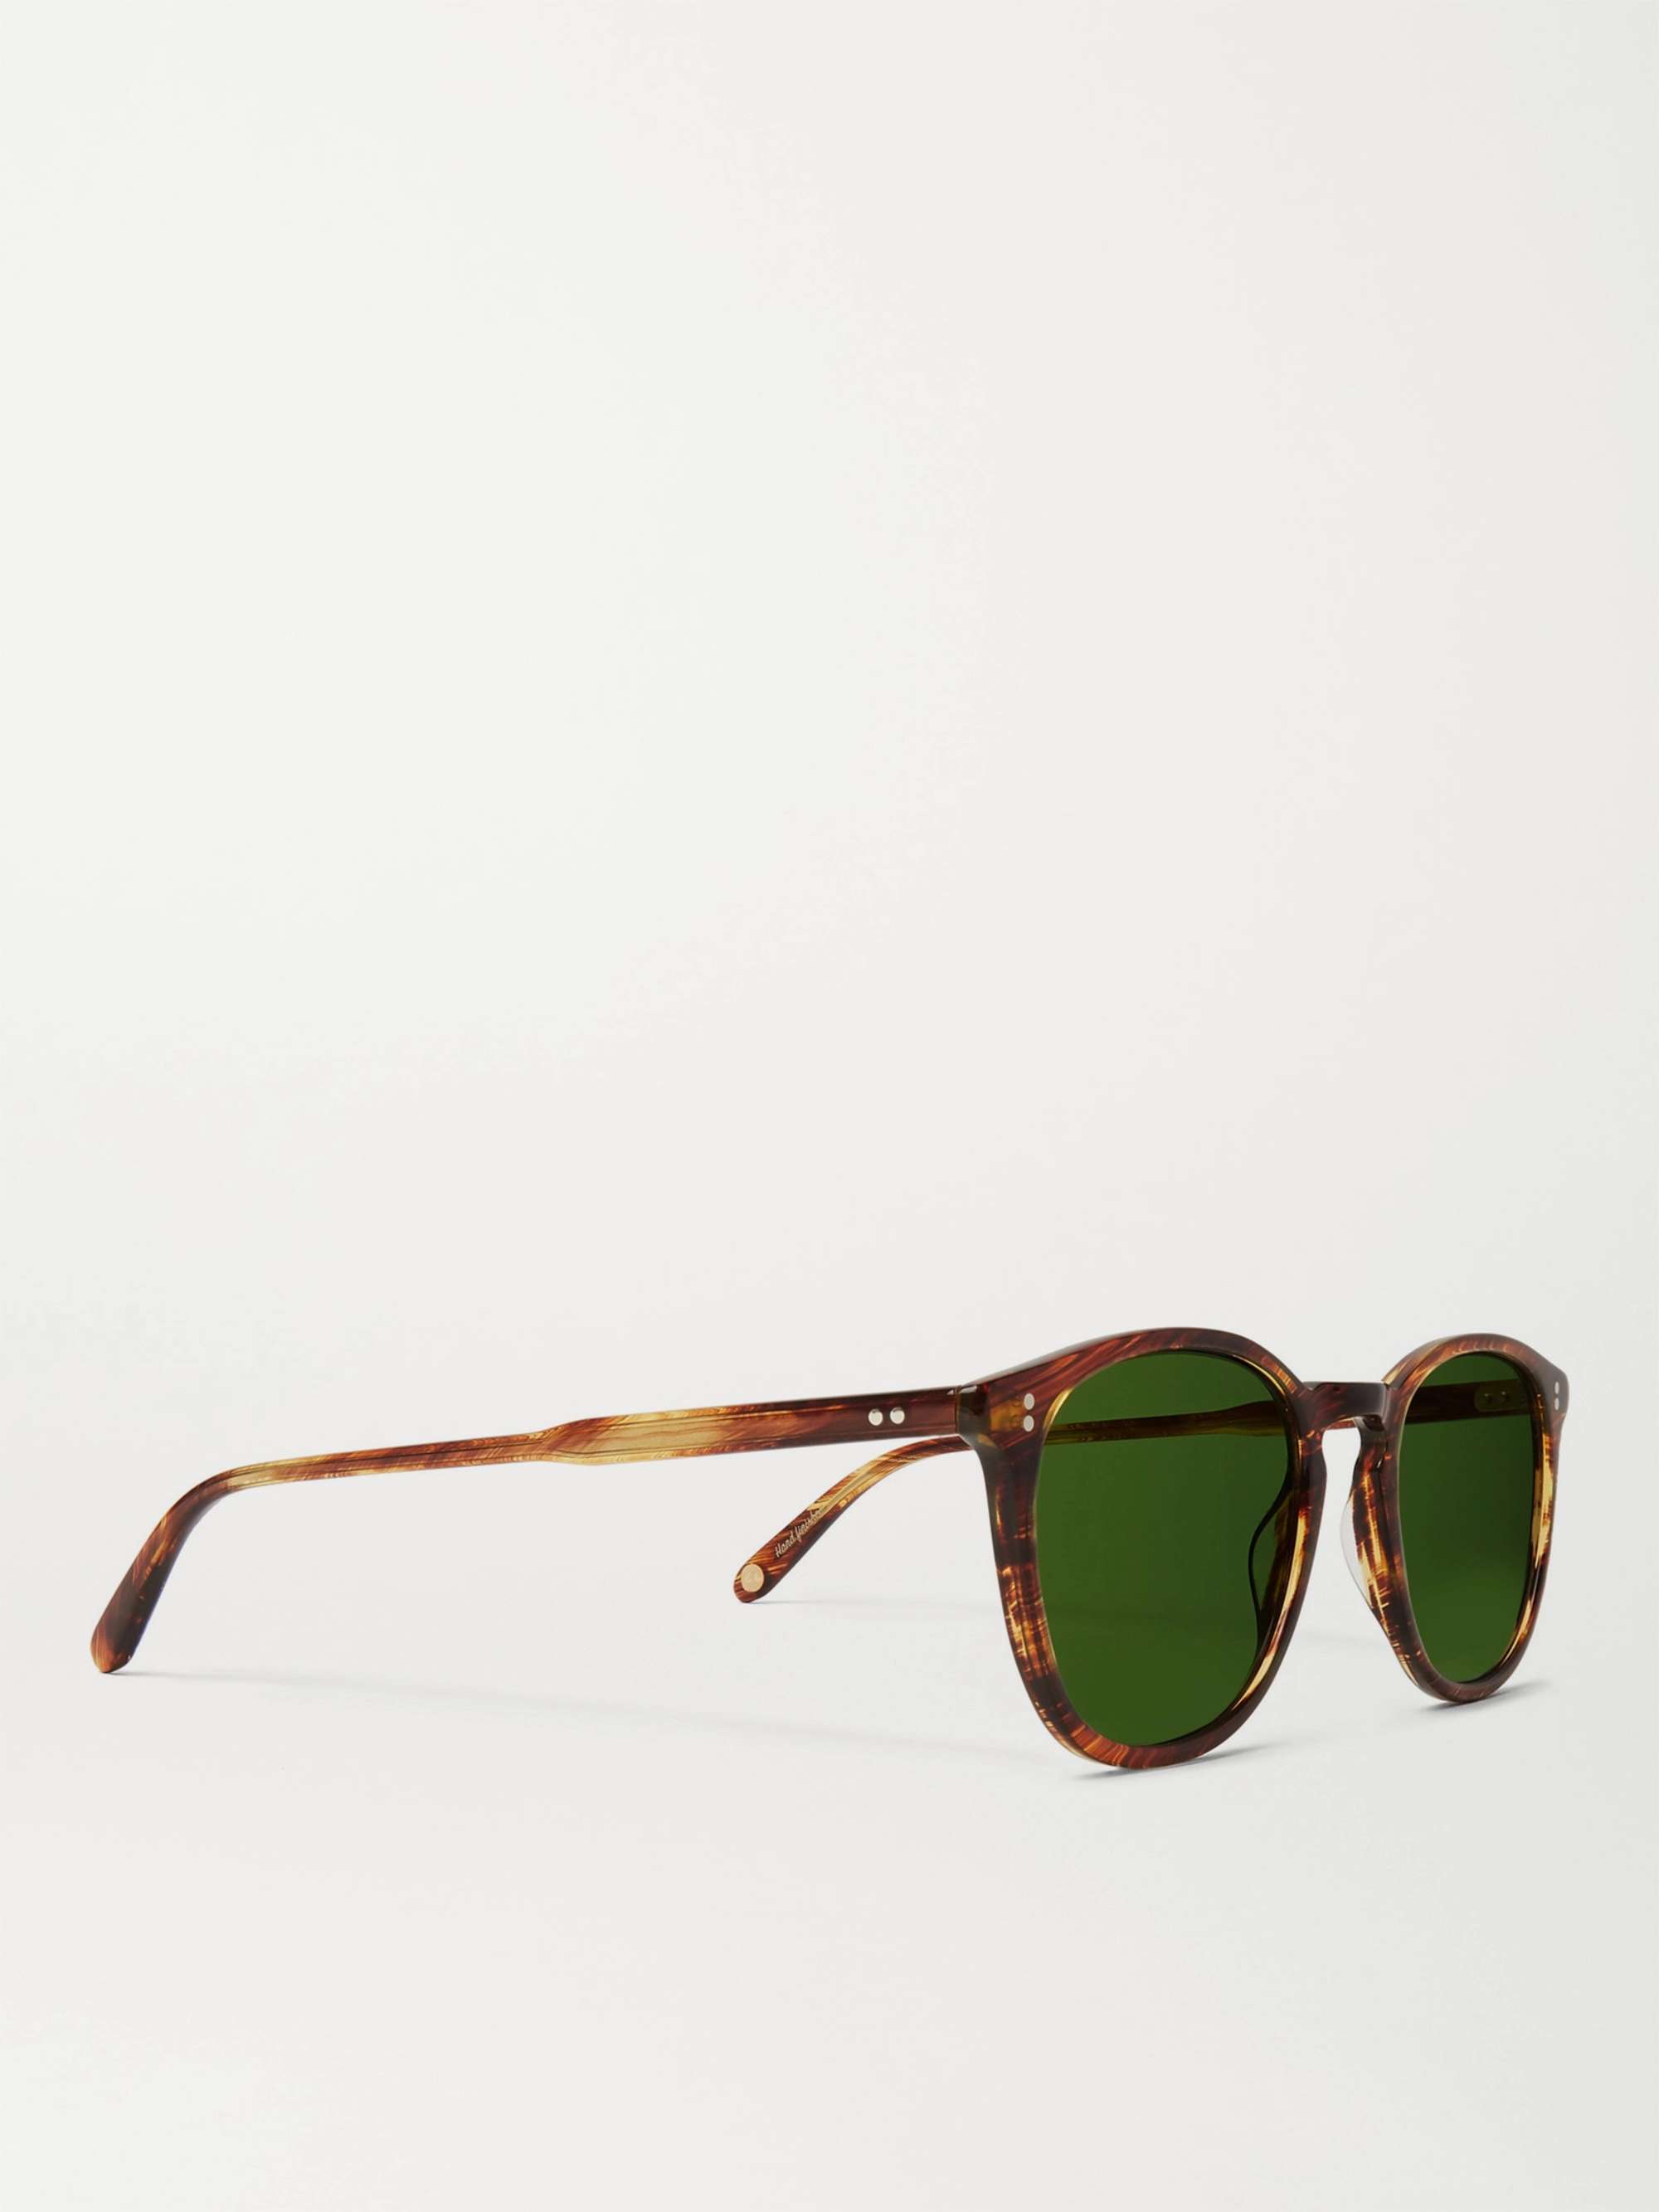 GARRETT LEIGHT CALIFORNIA OPTICAL Kinney D-Frame Tortoiseshell Acetate Sunglasses